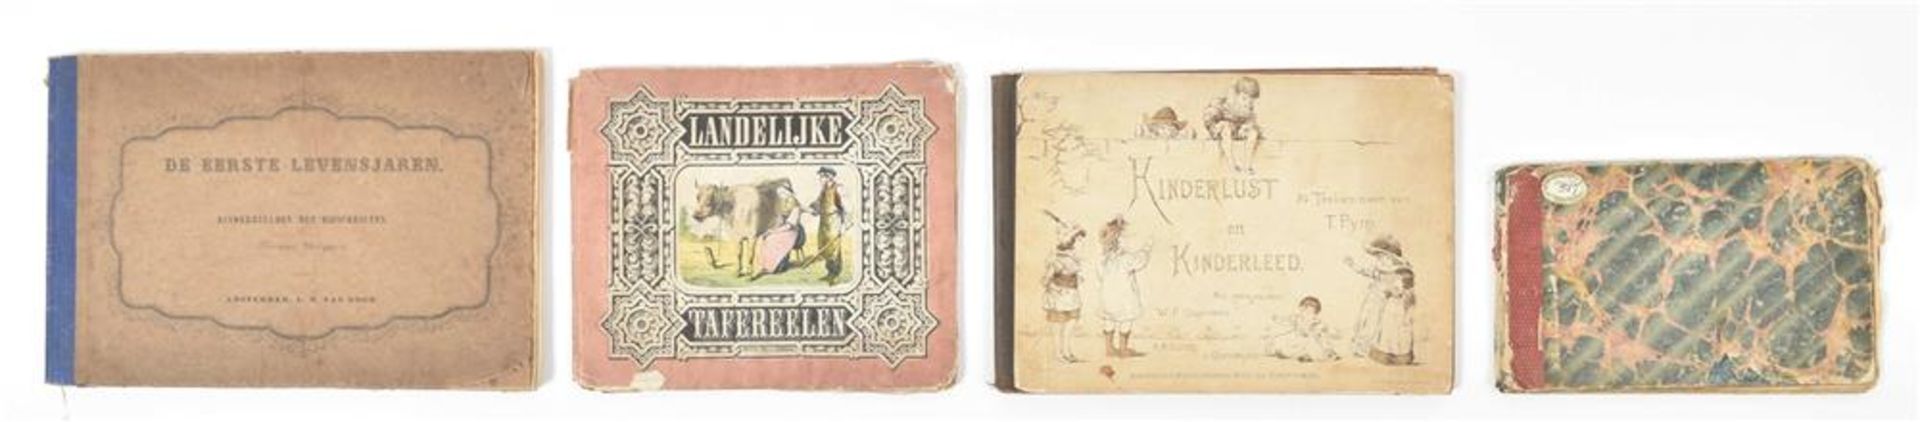 [Dutch children's books] Seven mid nineteenth century Dutch titles: (1) In de speeluren - Image 4 of 10